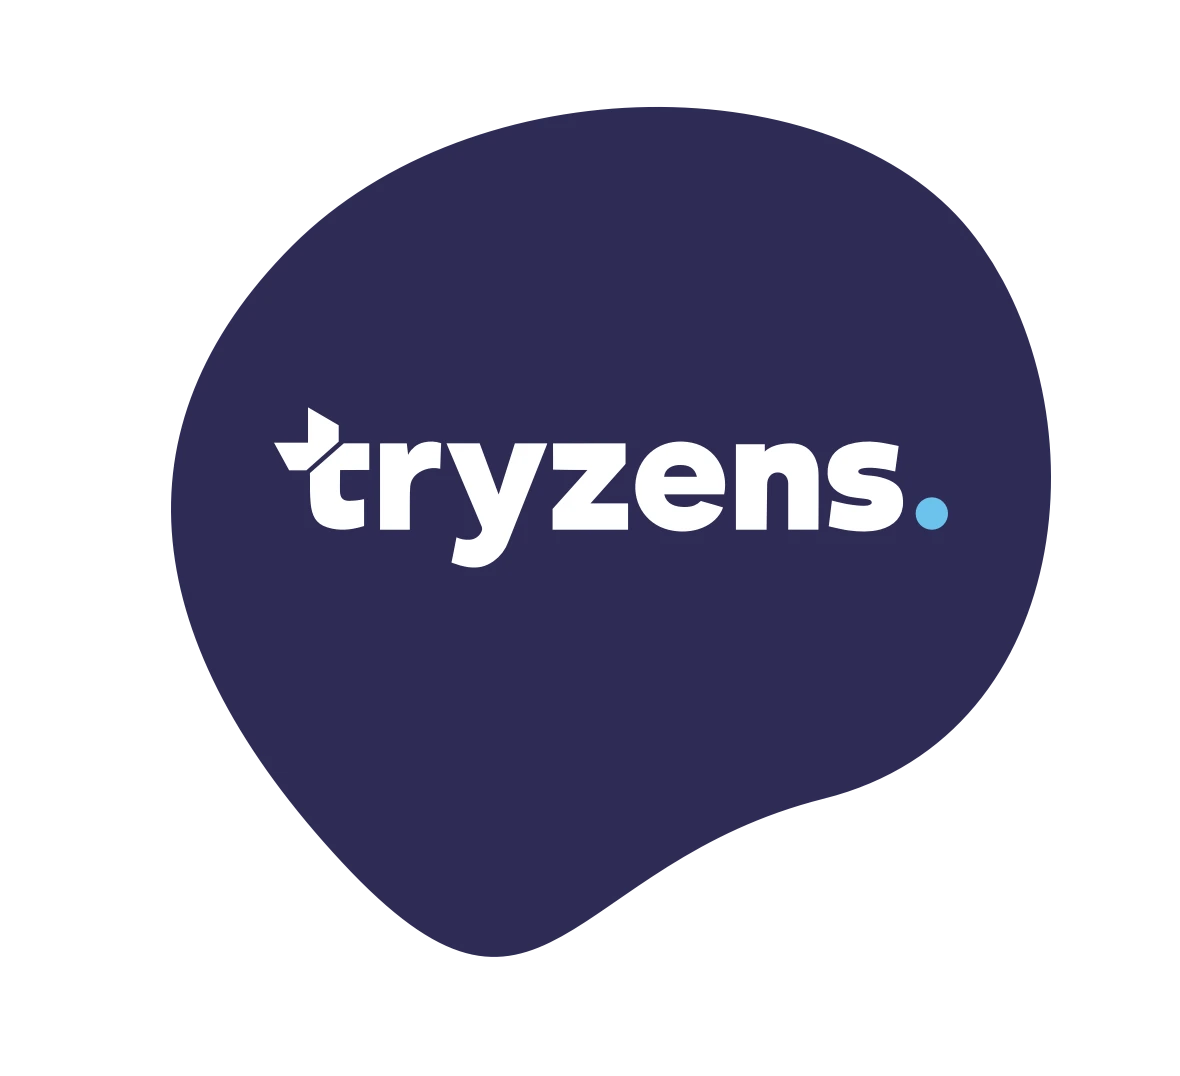 Tryzens logo on dark blue patch